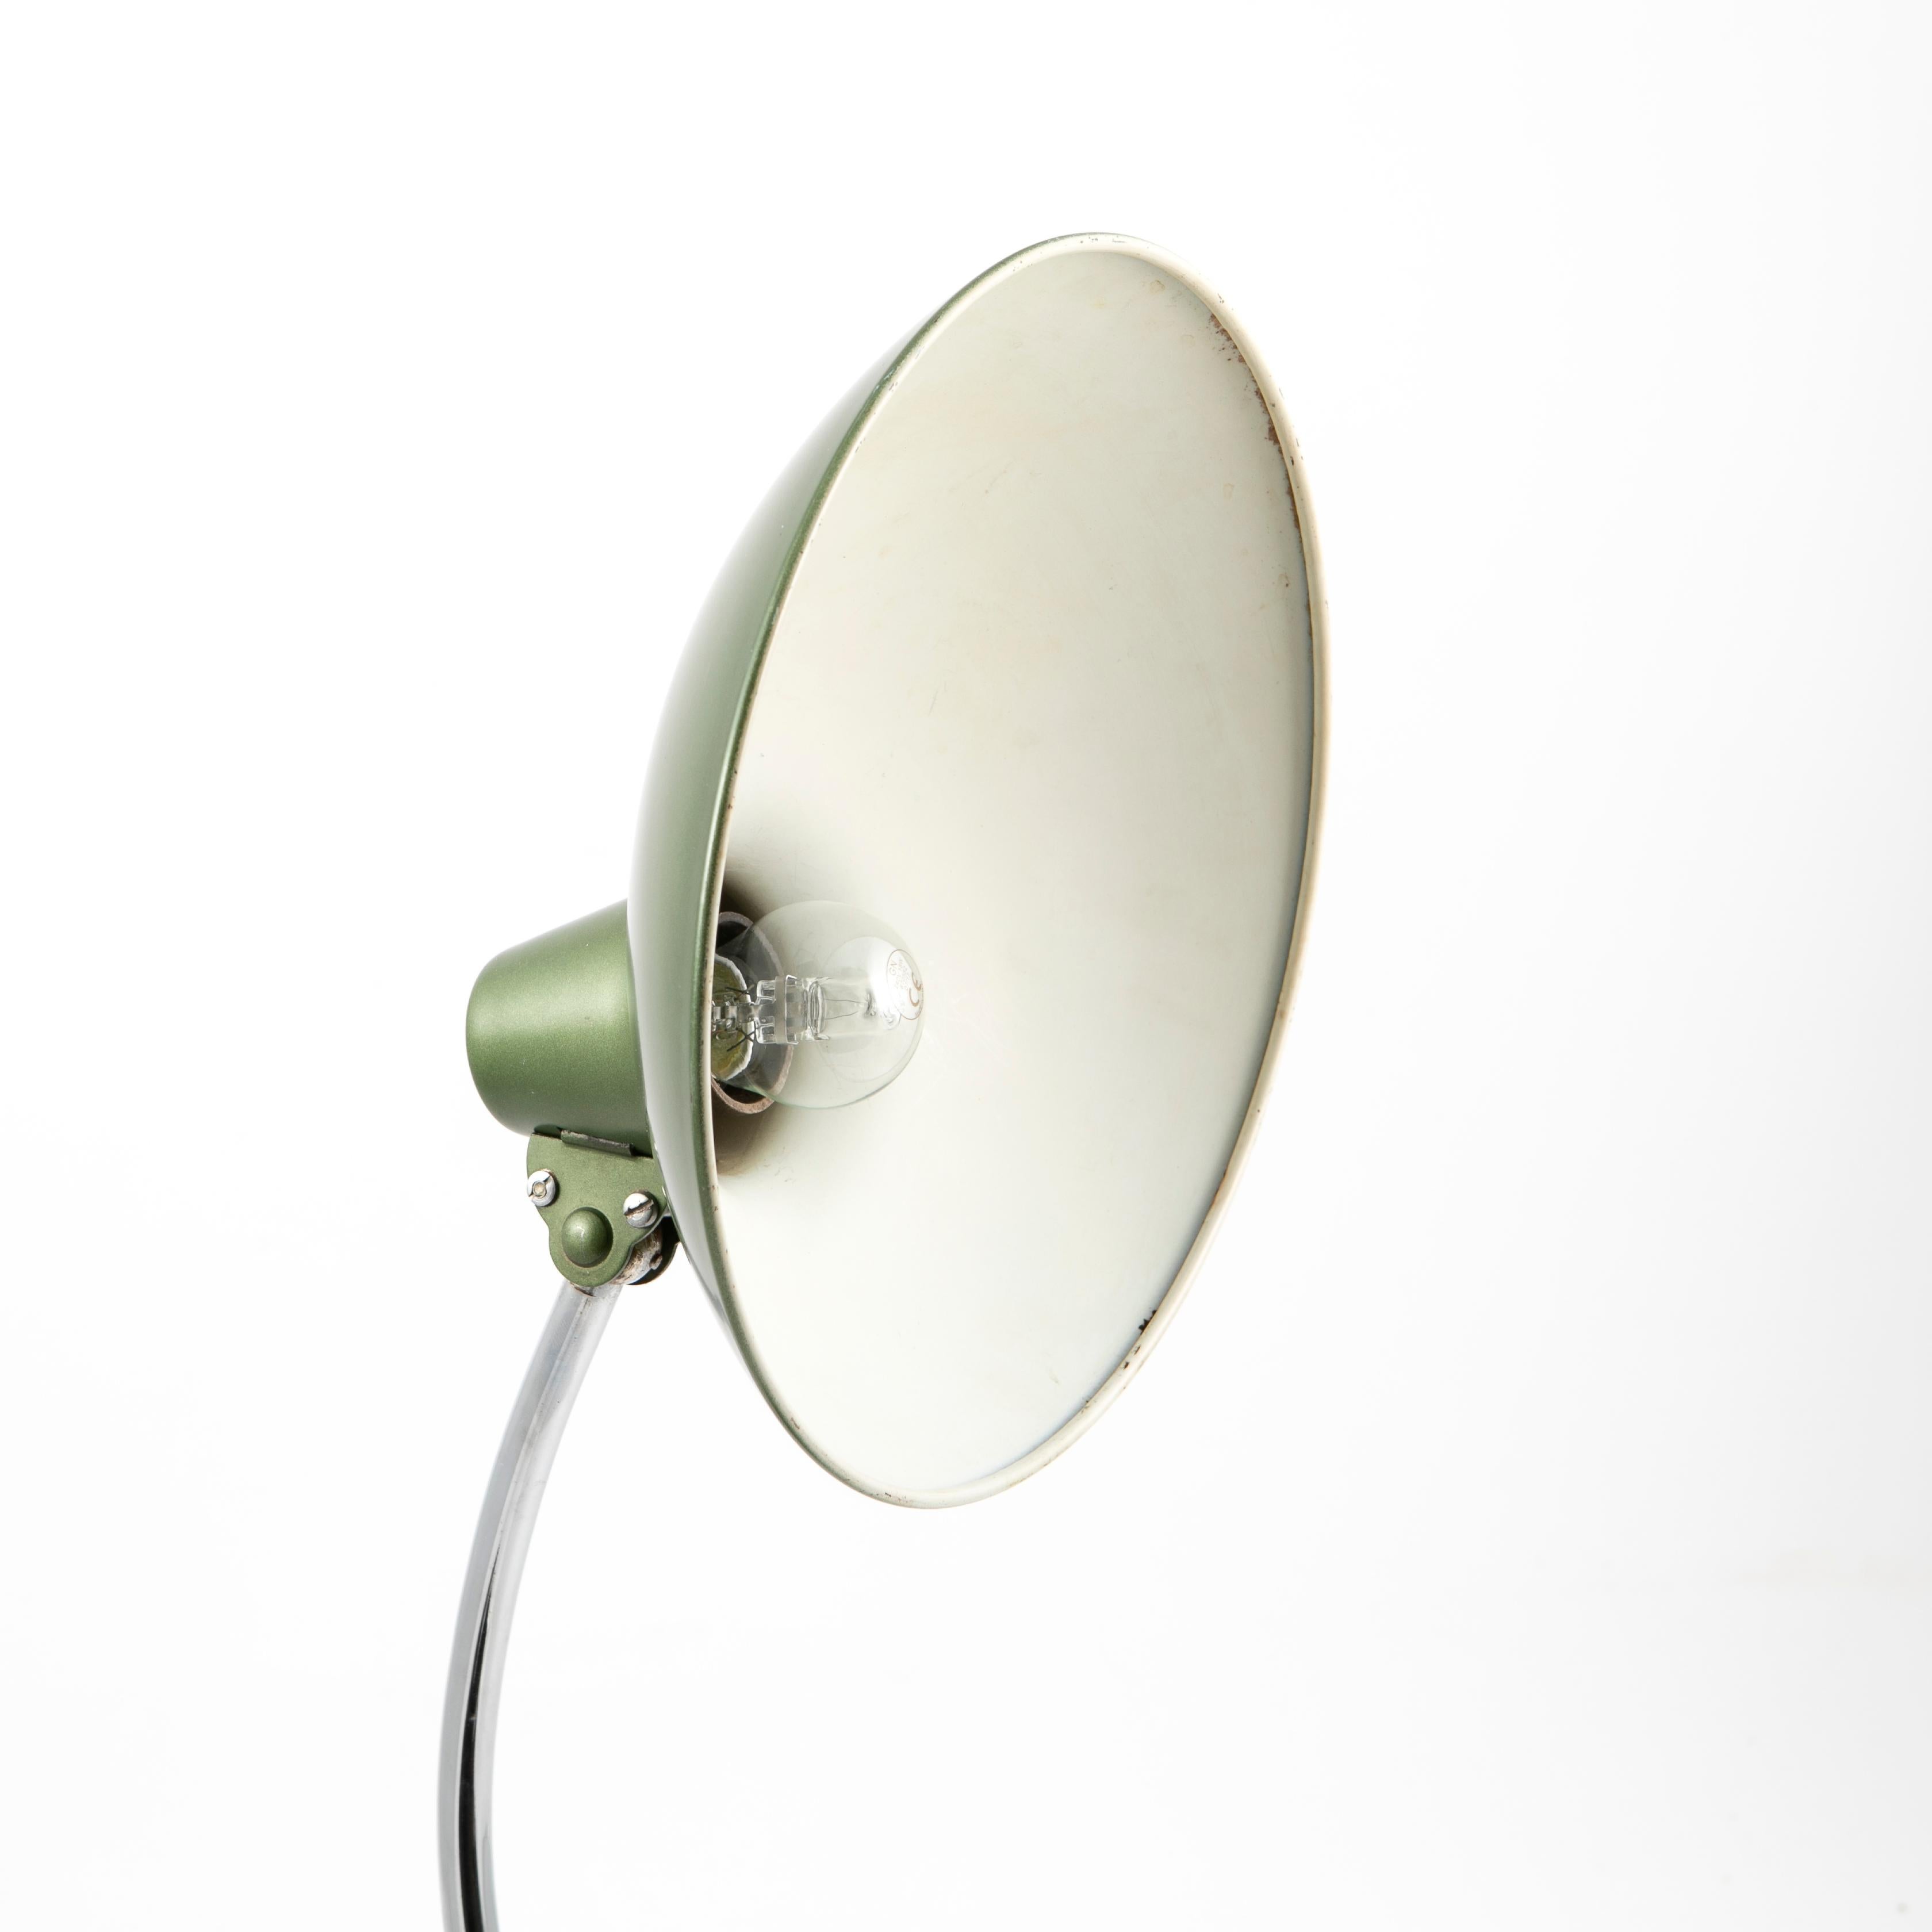 Bauhaus Christian dell desk lamp model 6786 for Kaiser Idell 3